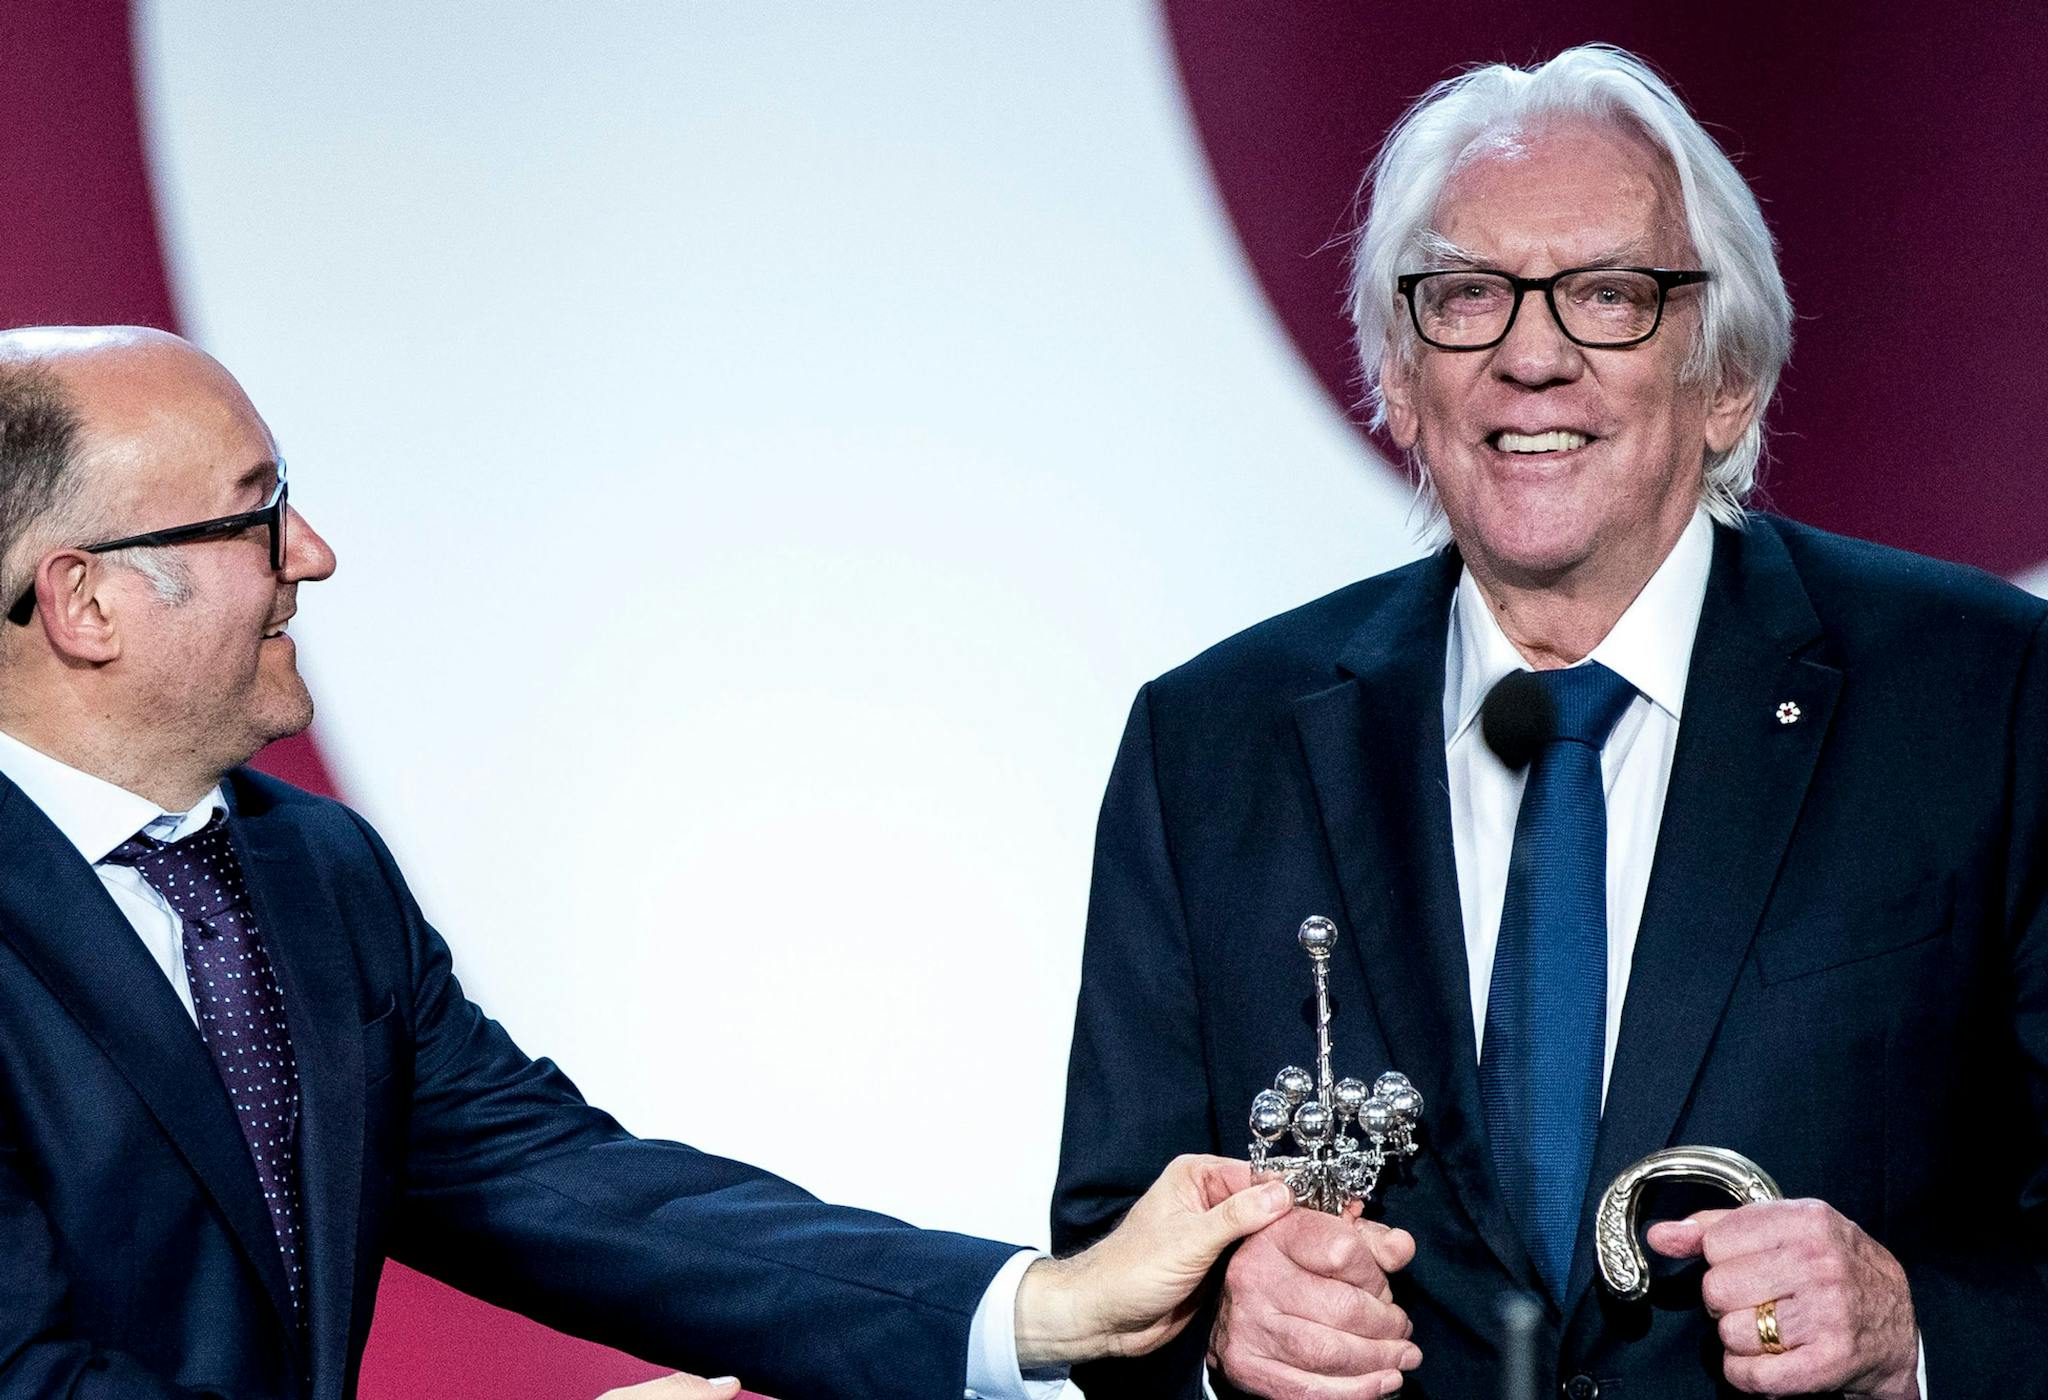 El actor Donald Sutherland recoge el Premio Donostia del Festival de San Sebastián, en 2019, de manos de José Luis Rebordinos